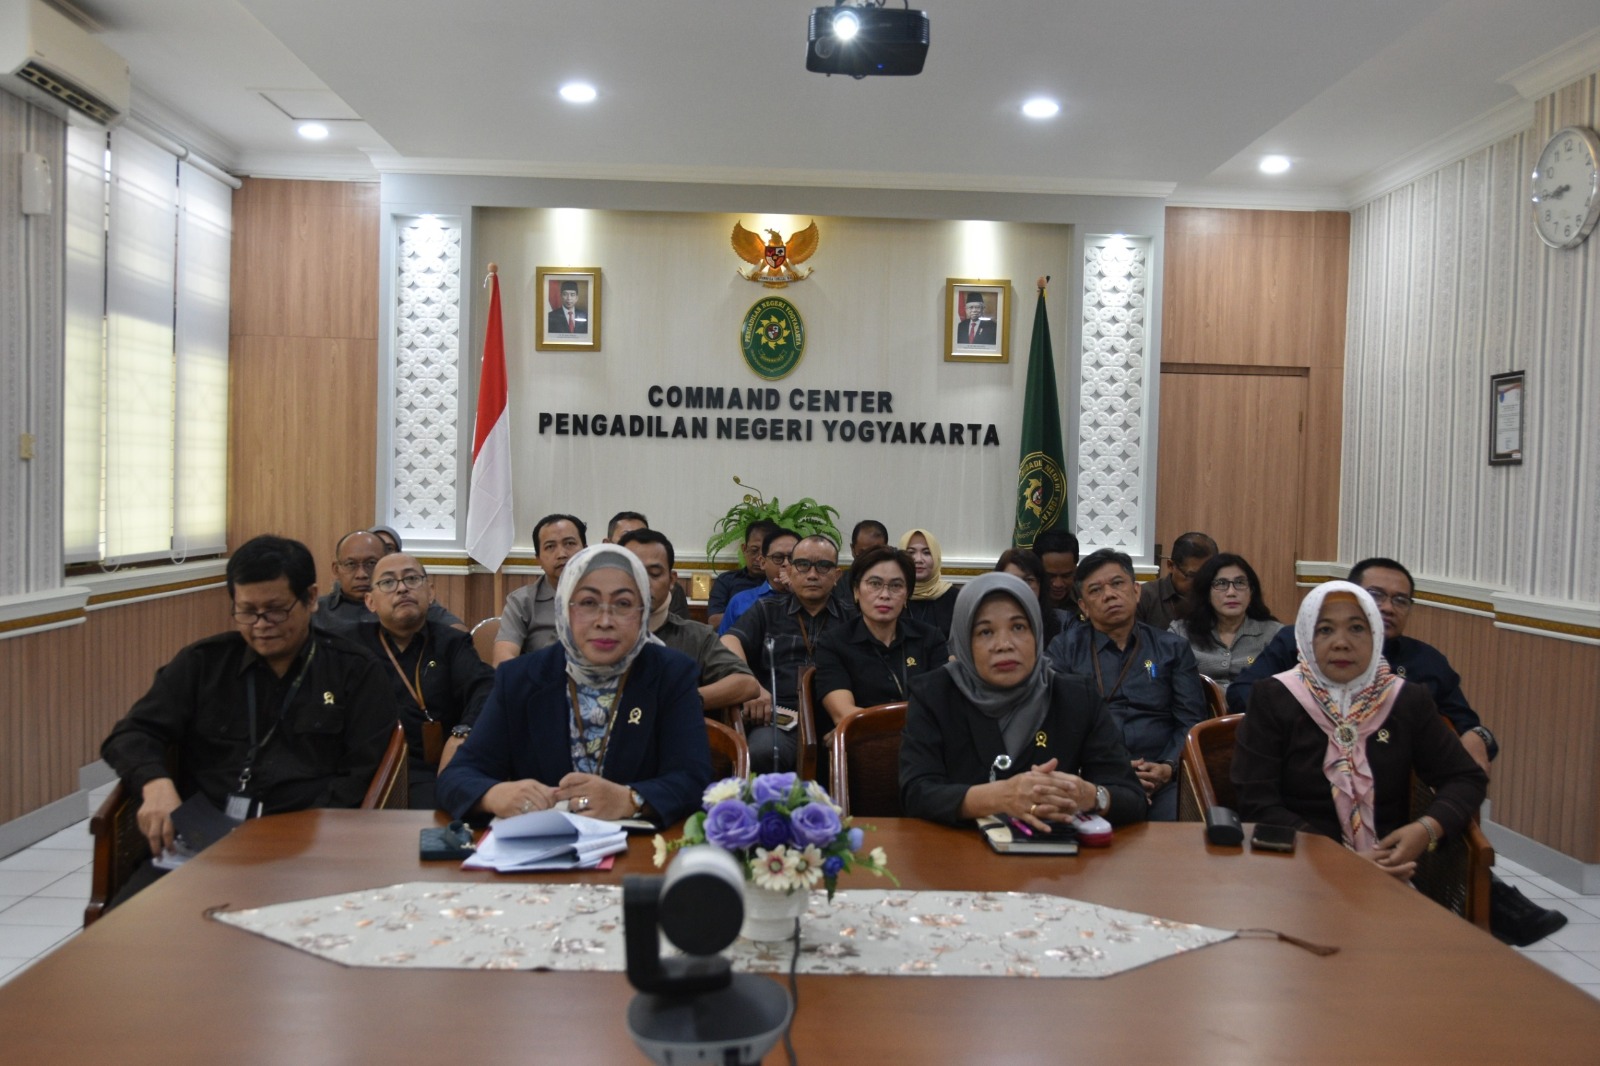 Pengadilan Negeri Yogyakarta Mengikuti FGD Bersama IKAHI Daerah Istimewa Yogyakarta